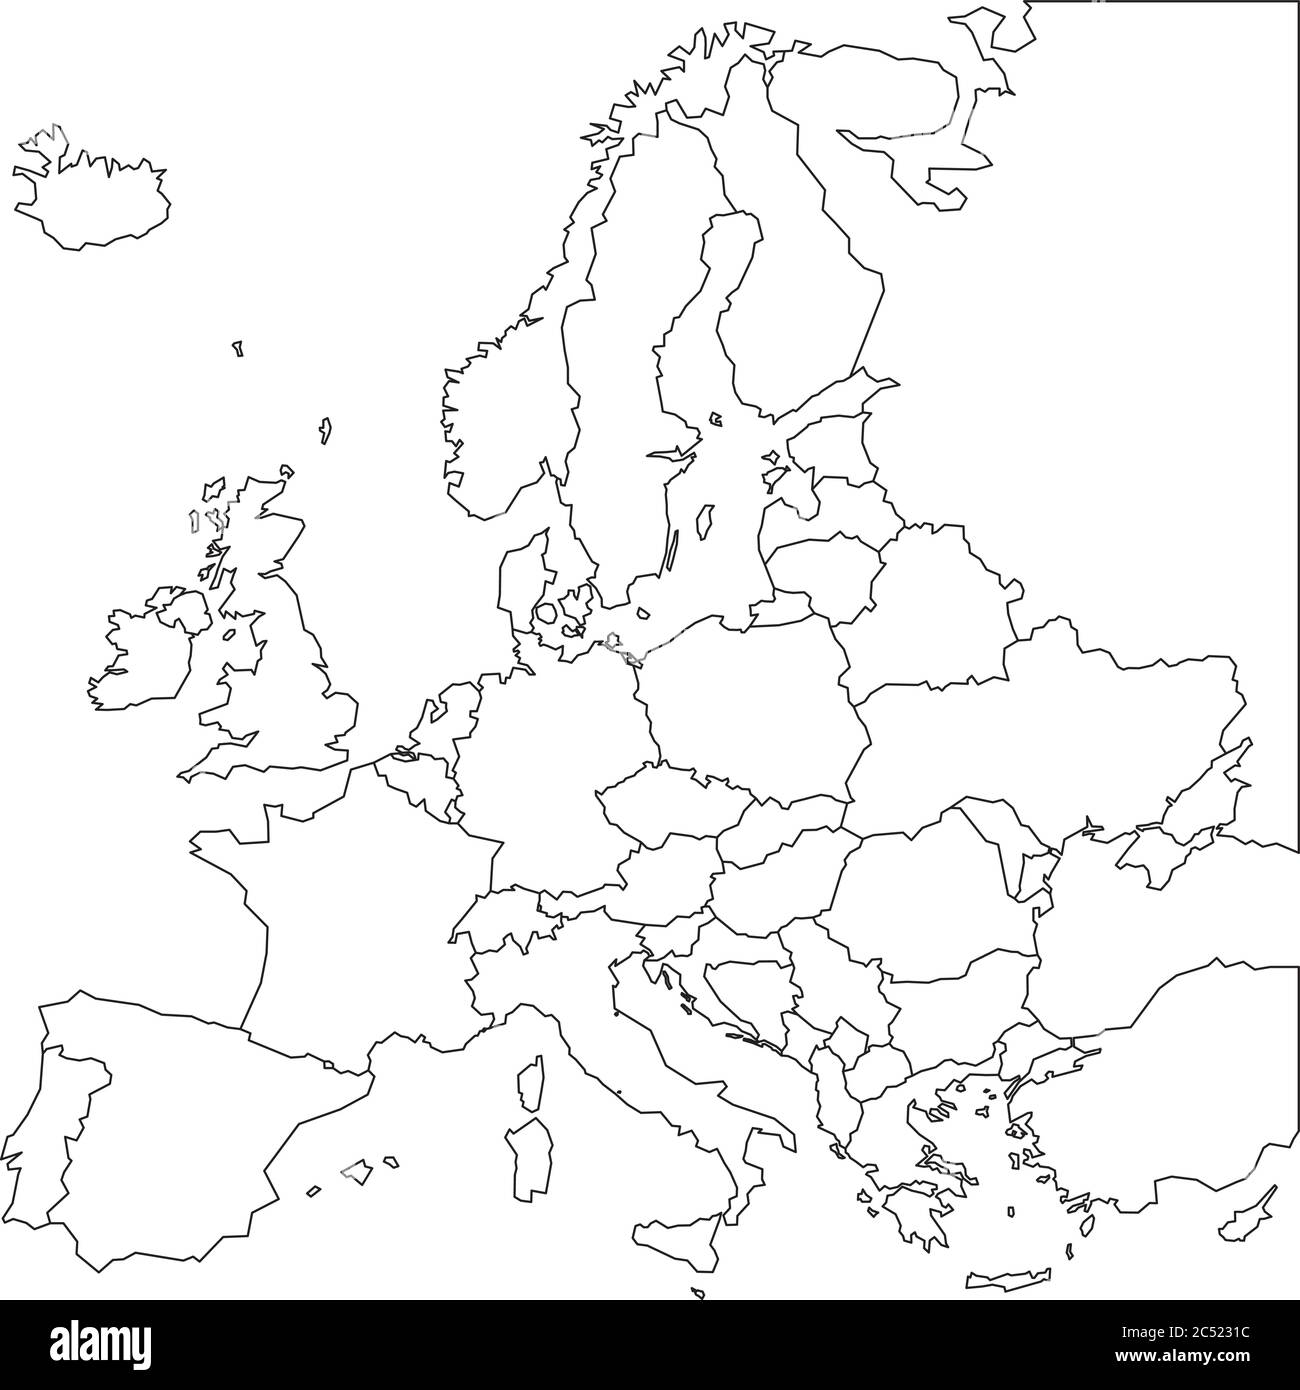 Leere Übersichtskarte von Europa. Vereinfachte Drahtgallmap mit schwarz linierten Rändern. Vektorgrafik. Stock Vektor